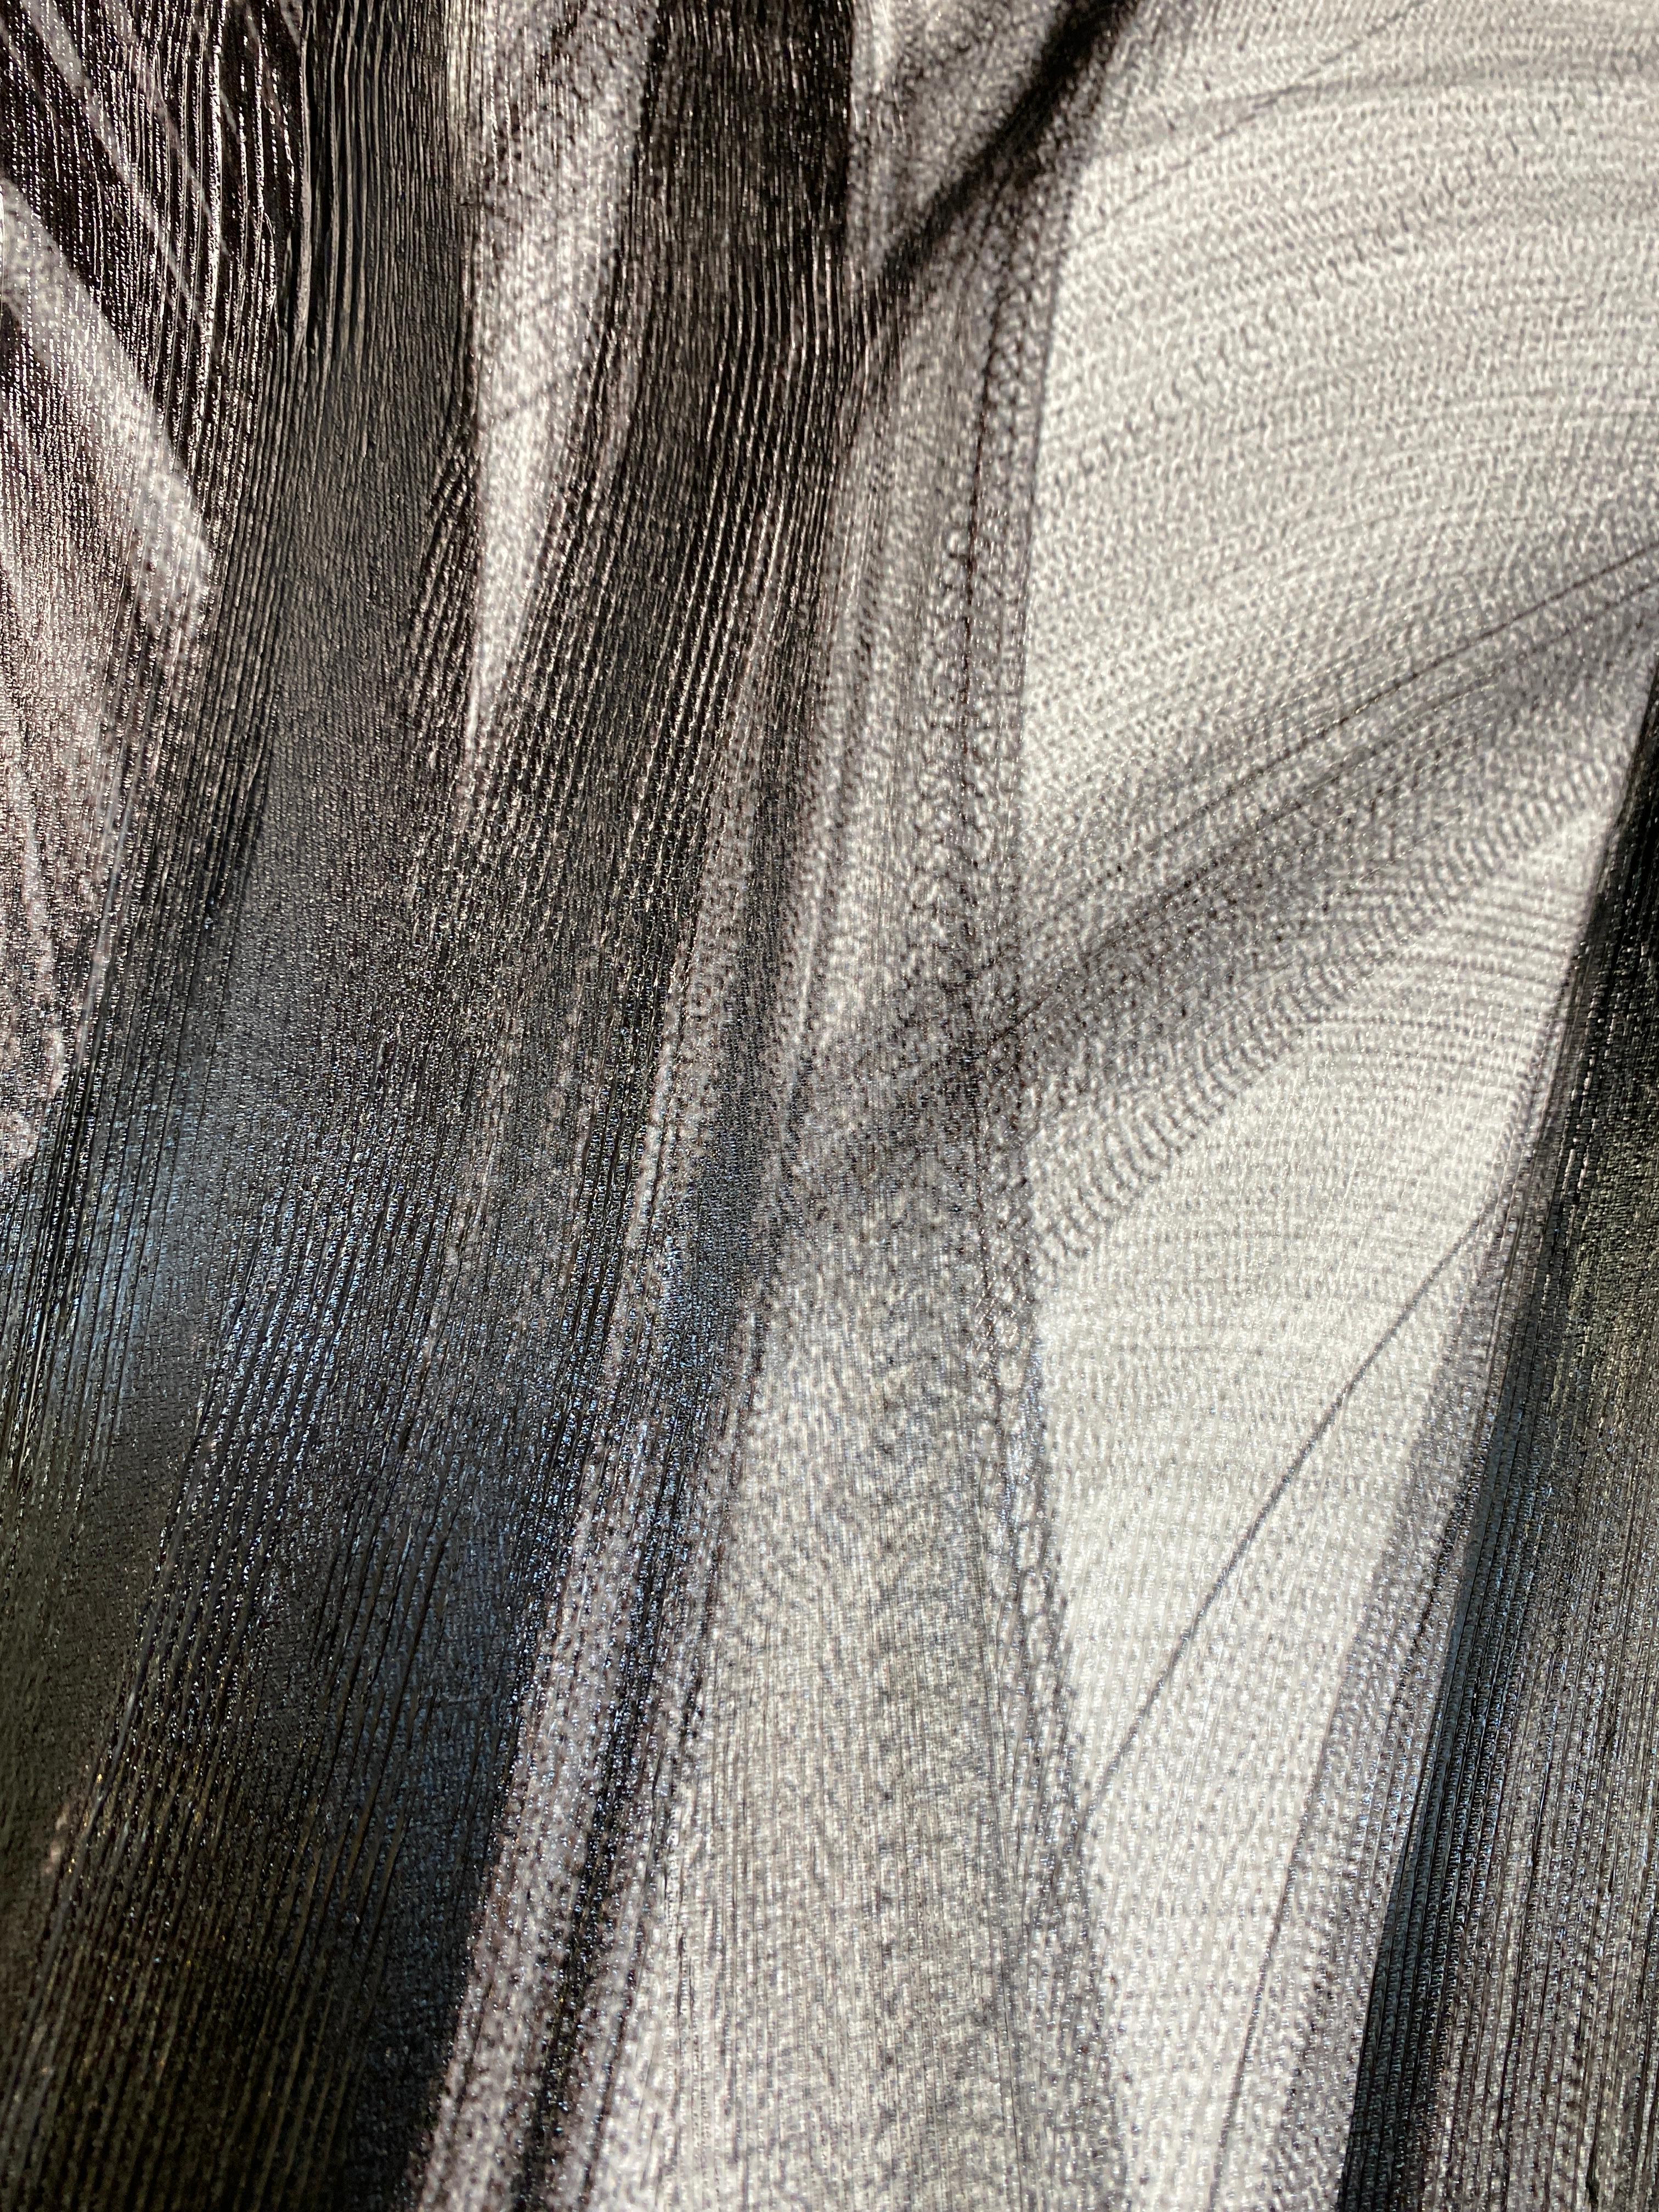 Minimalistisches Schwarz-Weiß-Gemälde in Schwarz-Weiß auf Leinwand 60x45